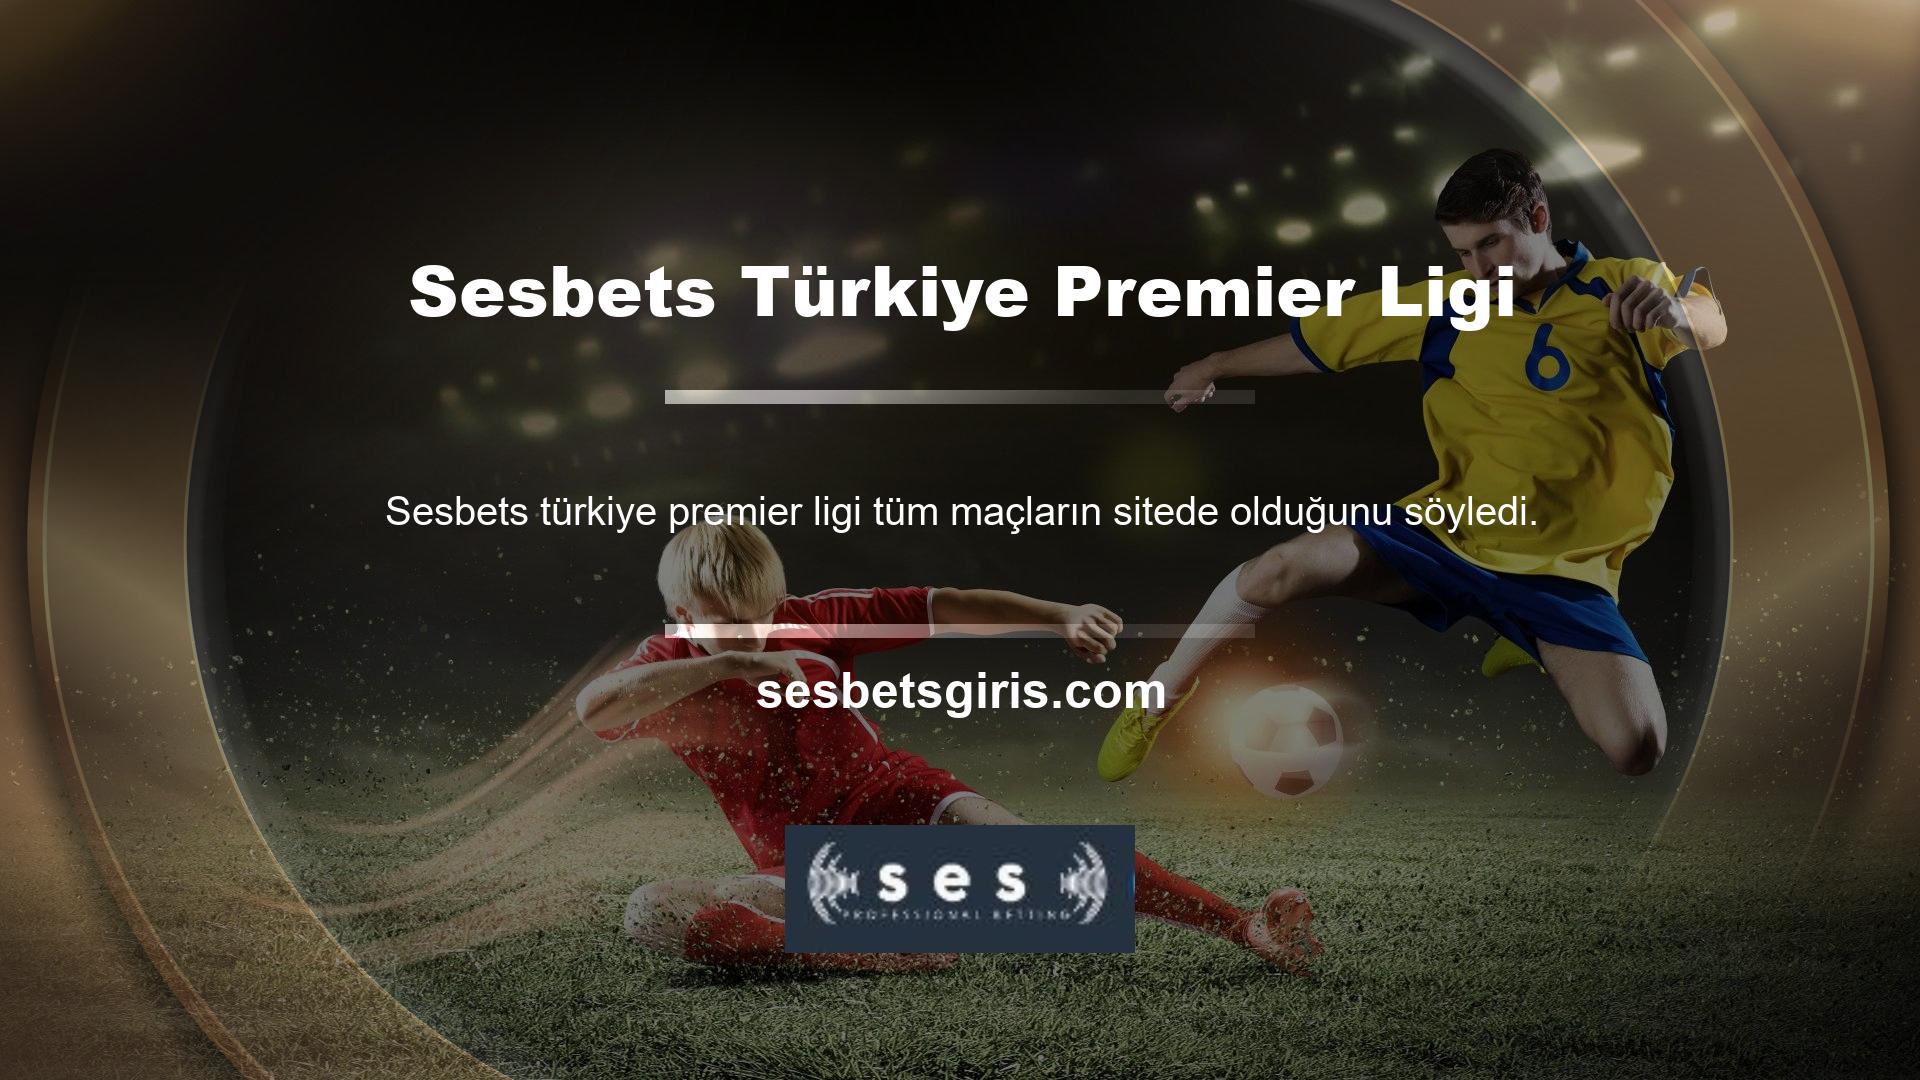 Bunlar arasında en çok Türkiye Süper Ligi dikkat çekiyor